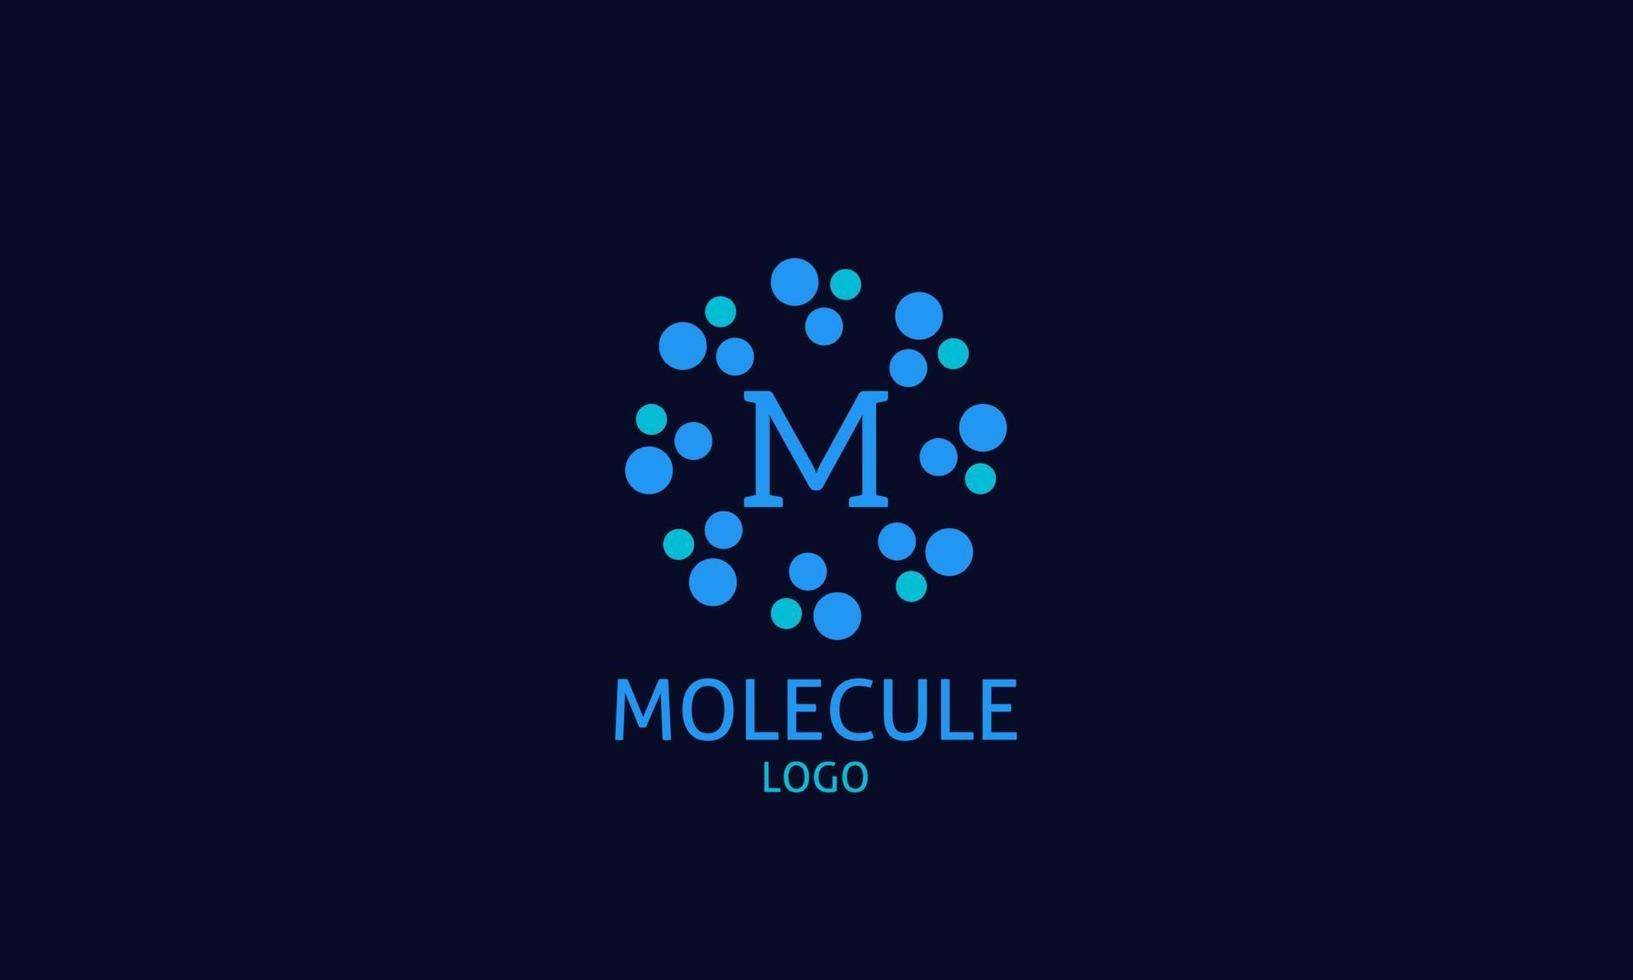 abstrakt blå cirkulär runda första brev logotyp vektor design för vetenskap, teknologi, sjukvård